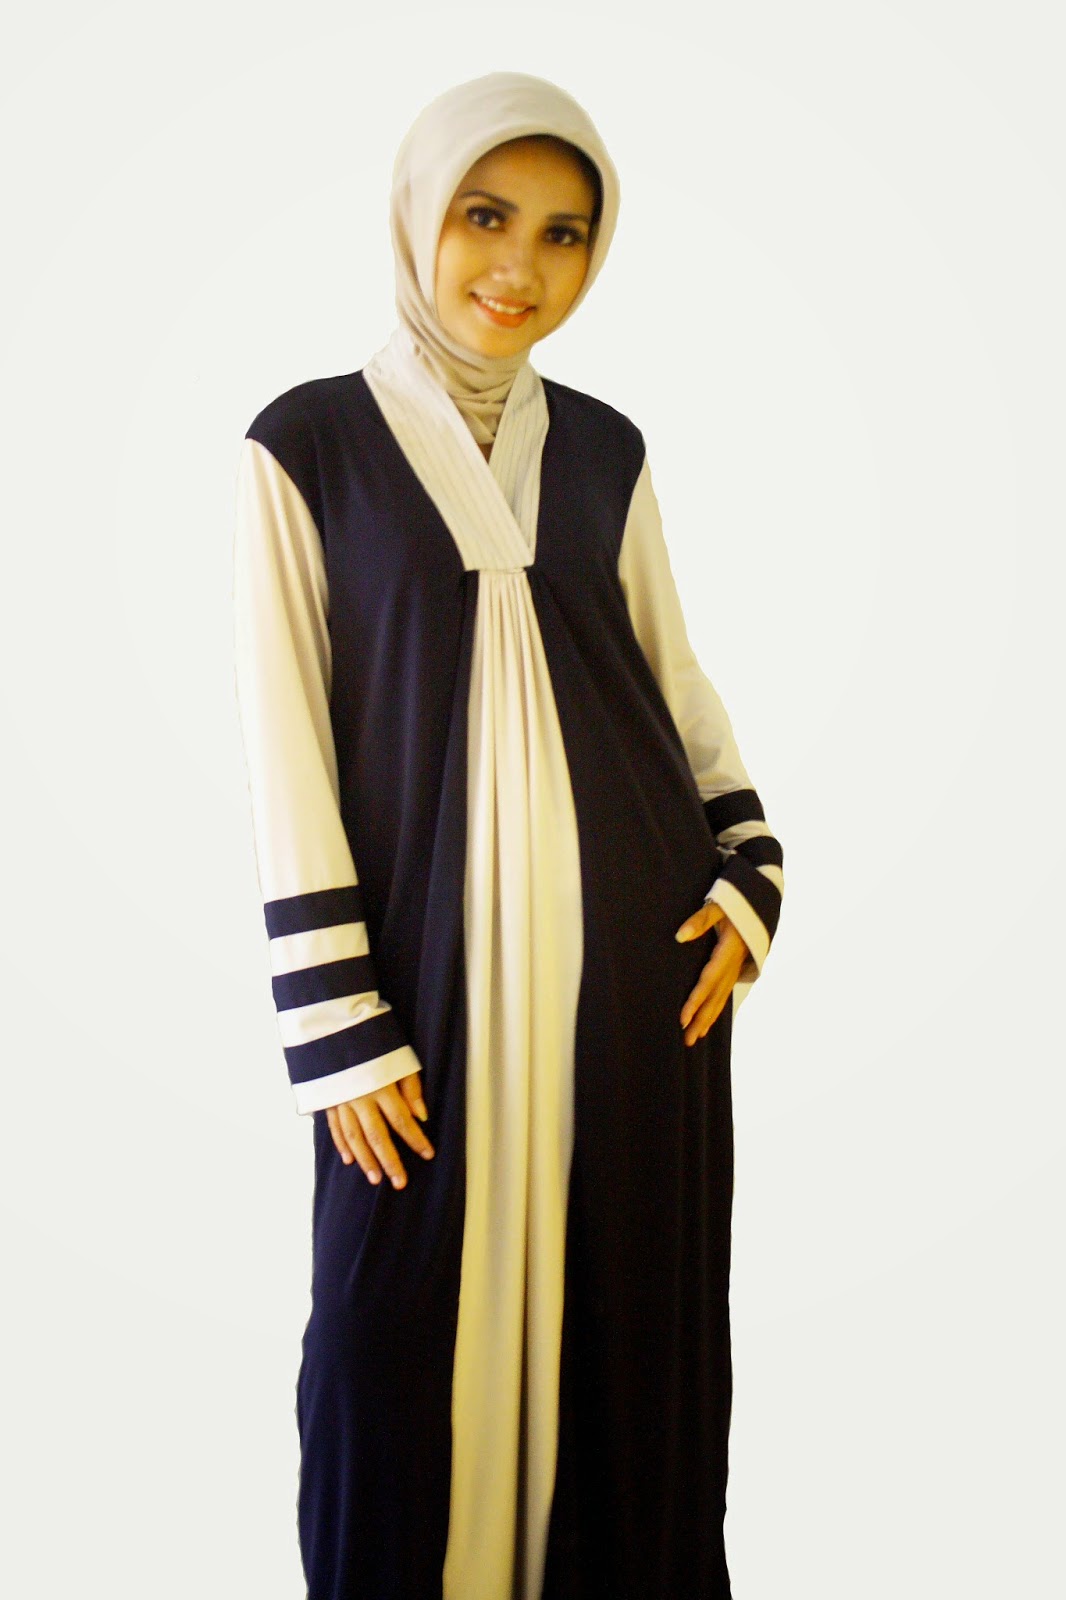 Contoh Model Baju Muslim Untuk Orang Gemuk